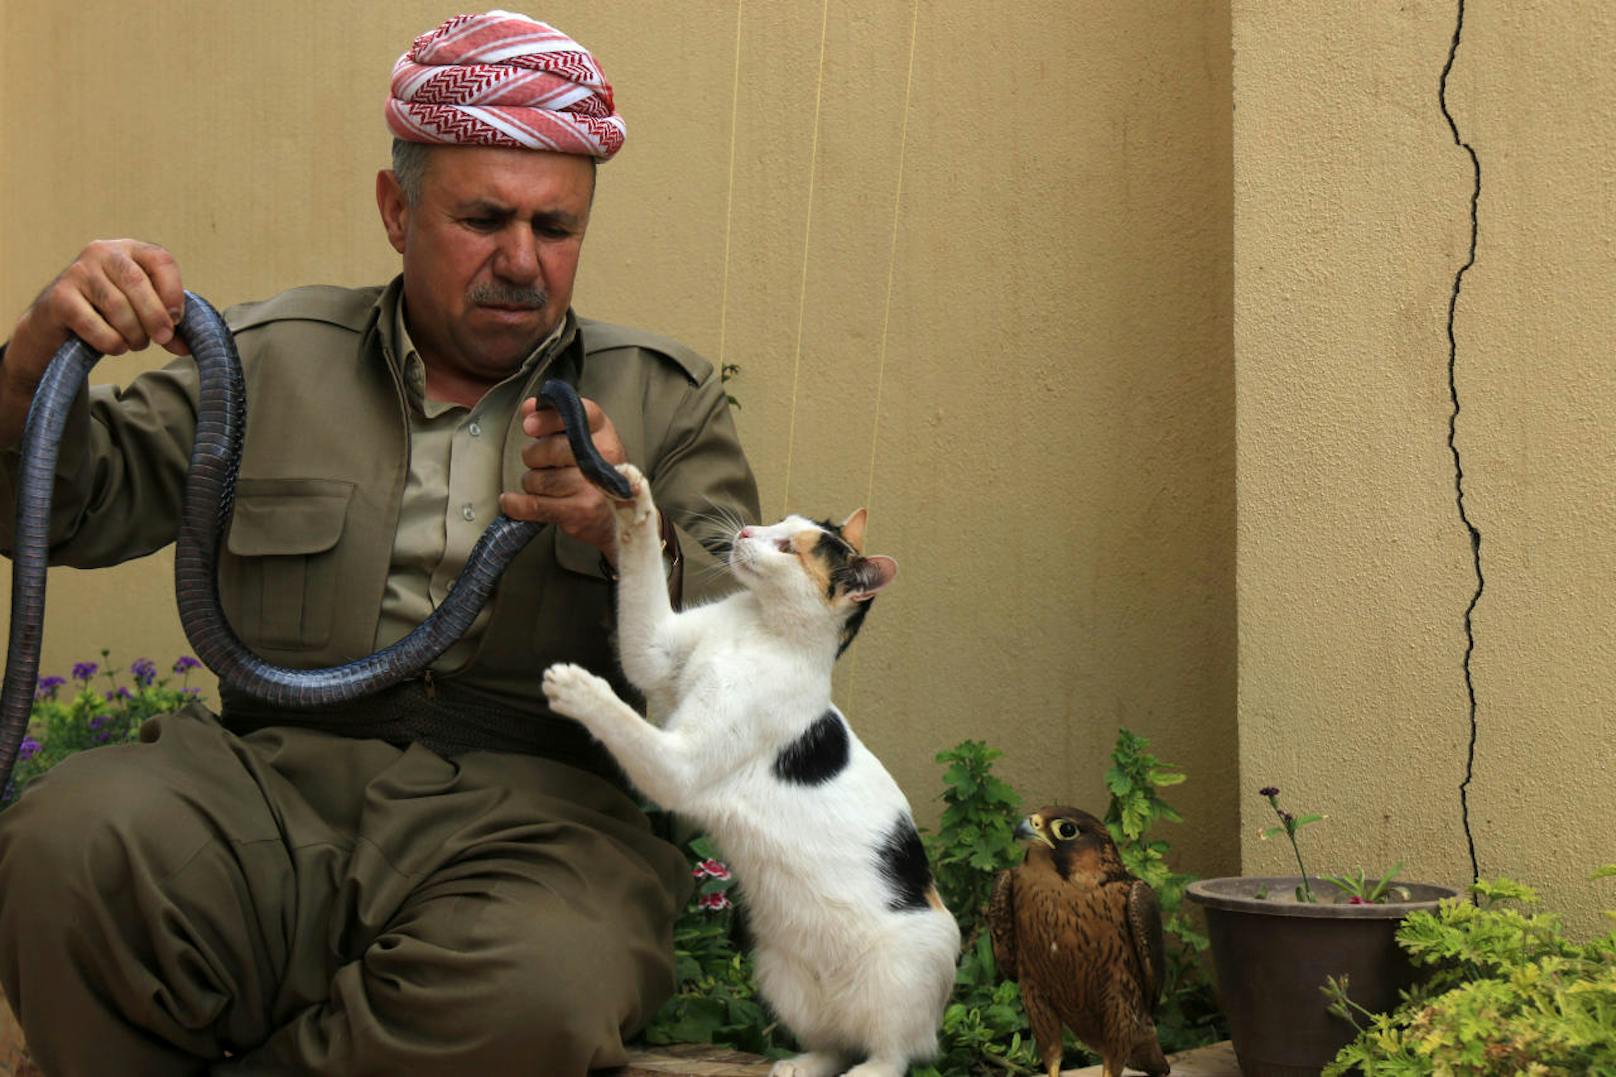 Schlangenzüchter Abdul Sattar Amin (50) aus dem Irak mag nicht nur Reptilien. Er liebt auch Katzen und Greifvögel. Dabei scheint es ihm wichtig, dass seine Tiere miteinander gut auskommen.